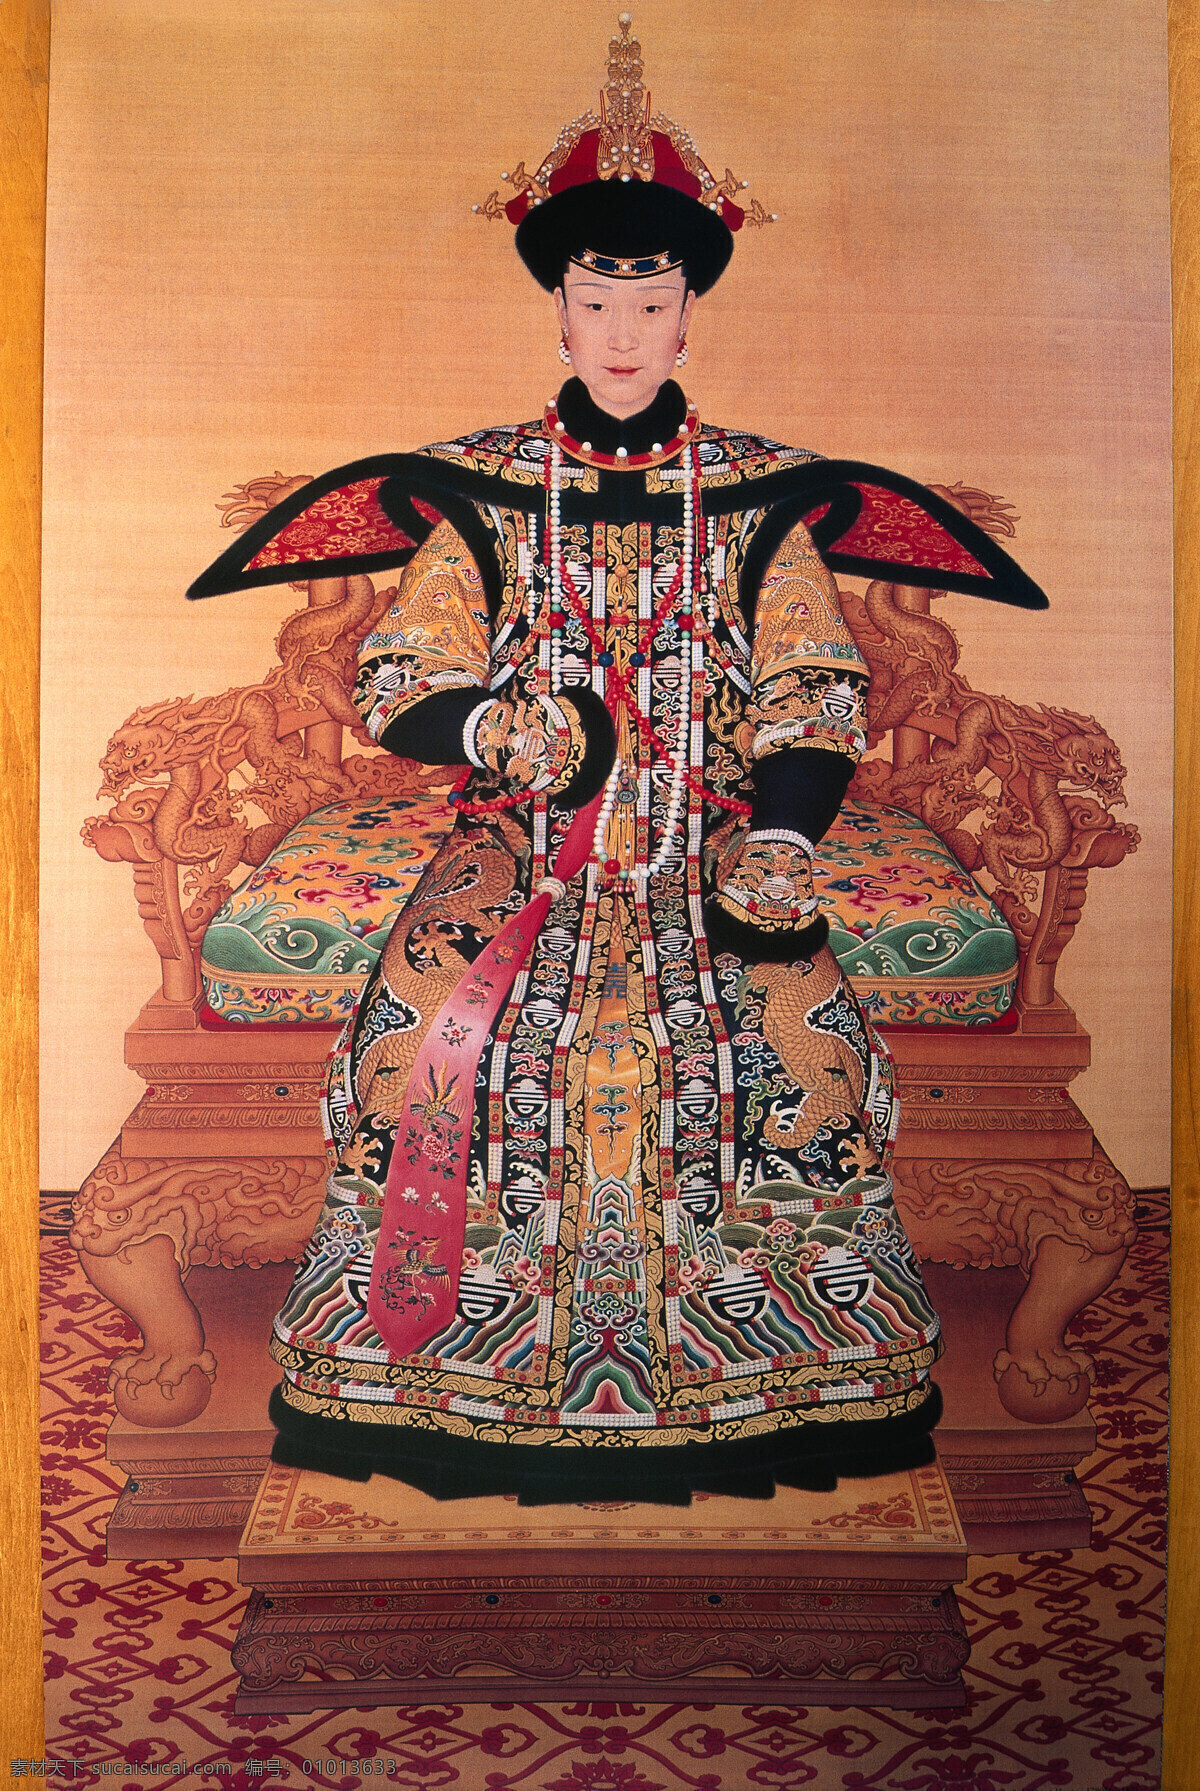 慈禧 太 厚 高清 画像 太后 清朝 女性 贵族 高分辨率 文化艺术 传统文化 设计图库